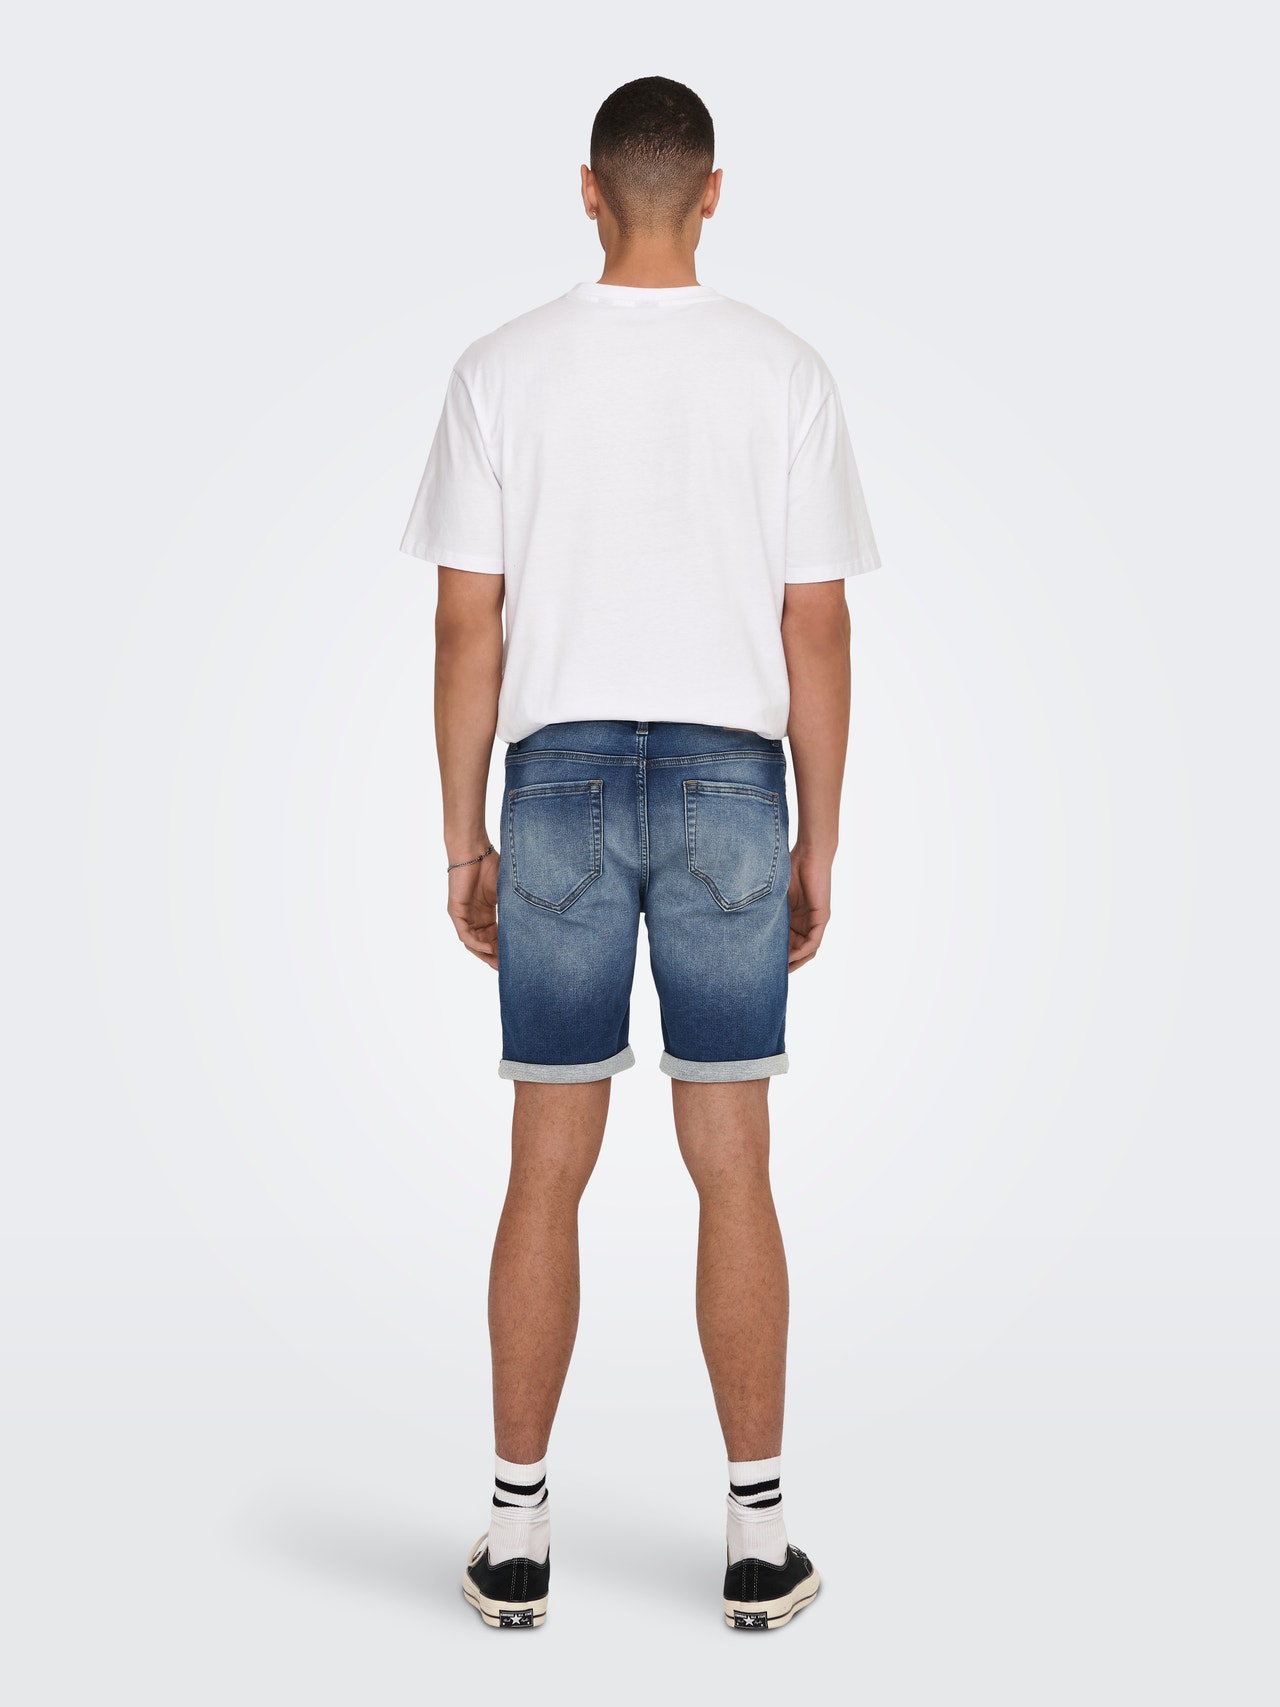 ONLY & SONS Regular Fit Mid waist Shorts -Dark Medium Blue Denim - 22025141